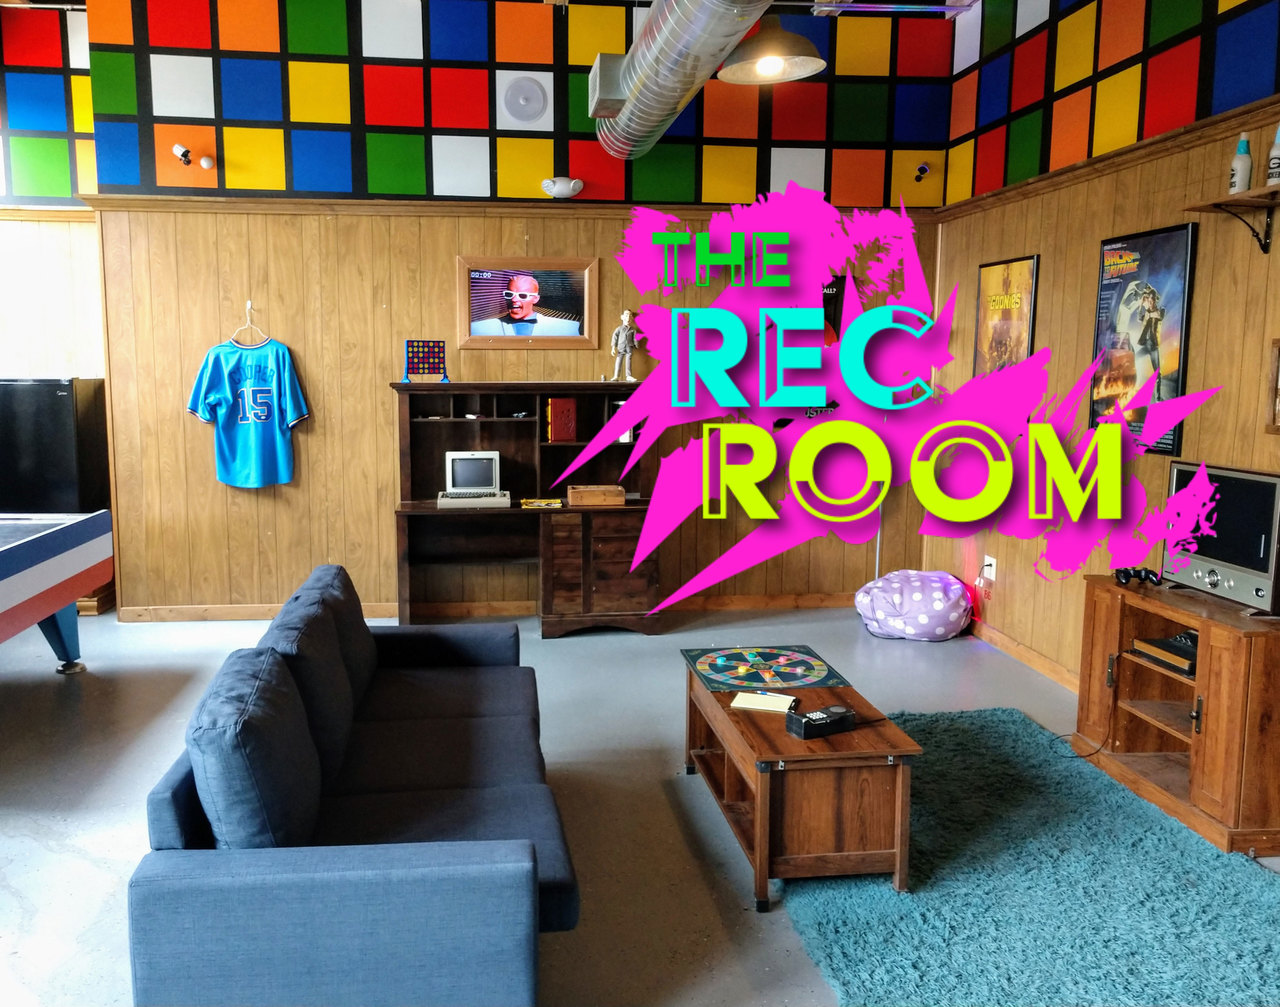 MIL Rec Room No TV 1 - The Rec Room